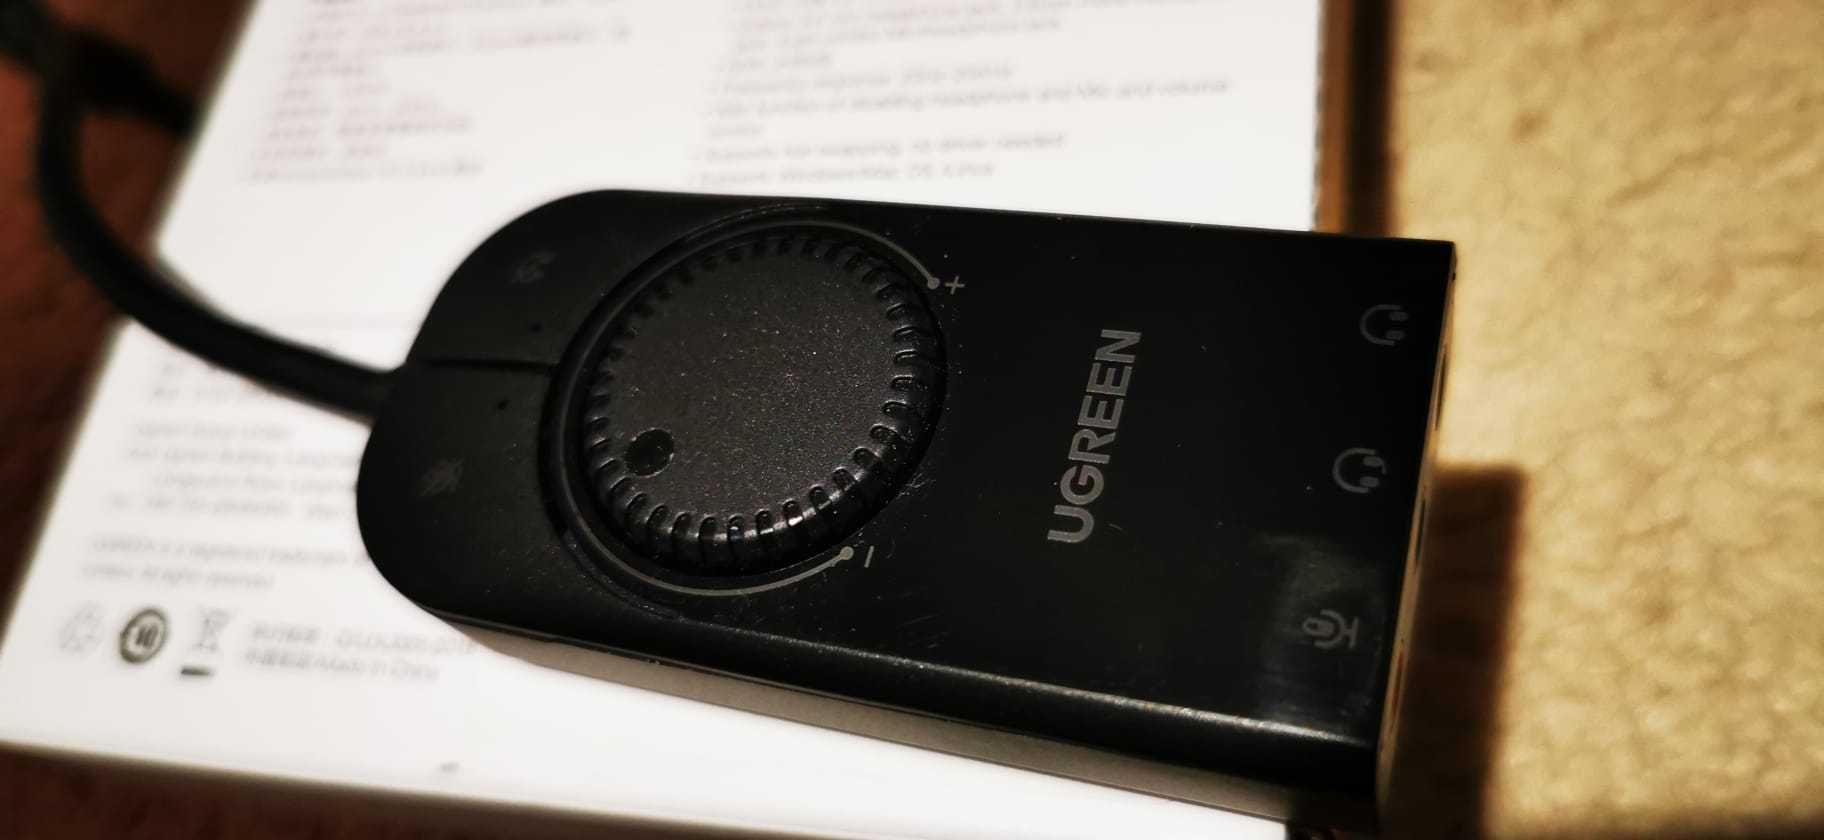 Placa de sunet externa Ugreen (40964) cu rotita volum, pe USB 2.0